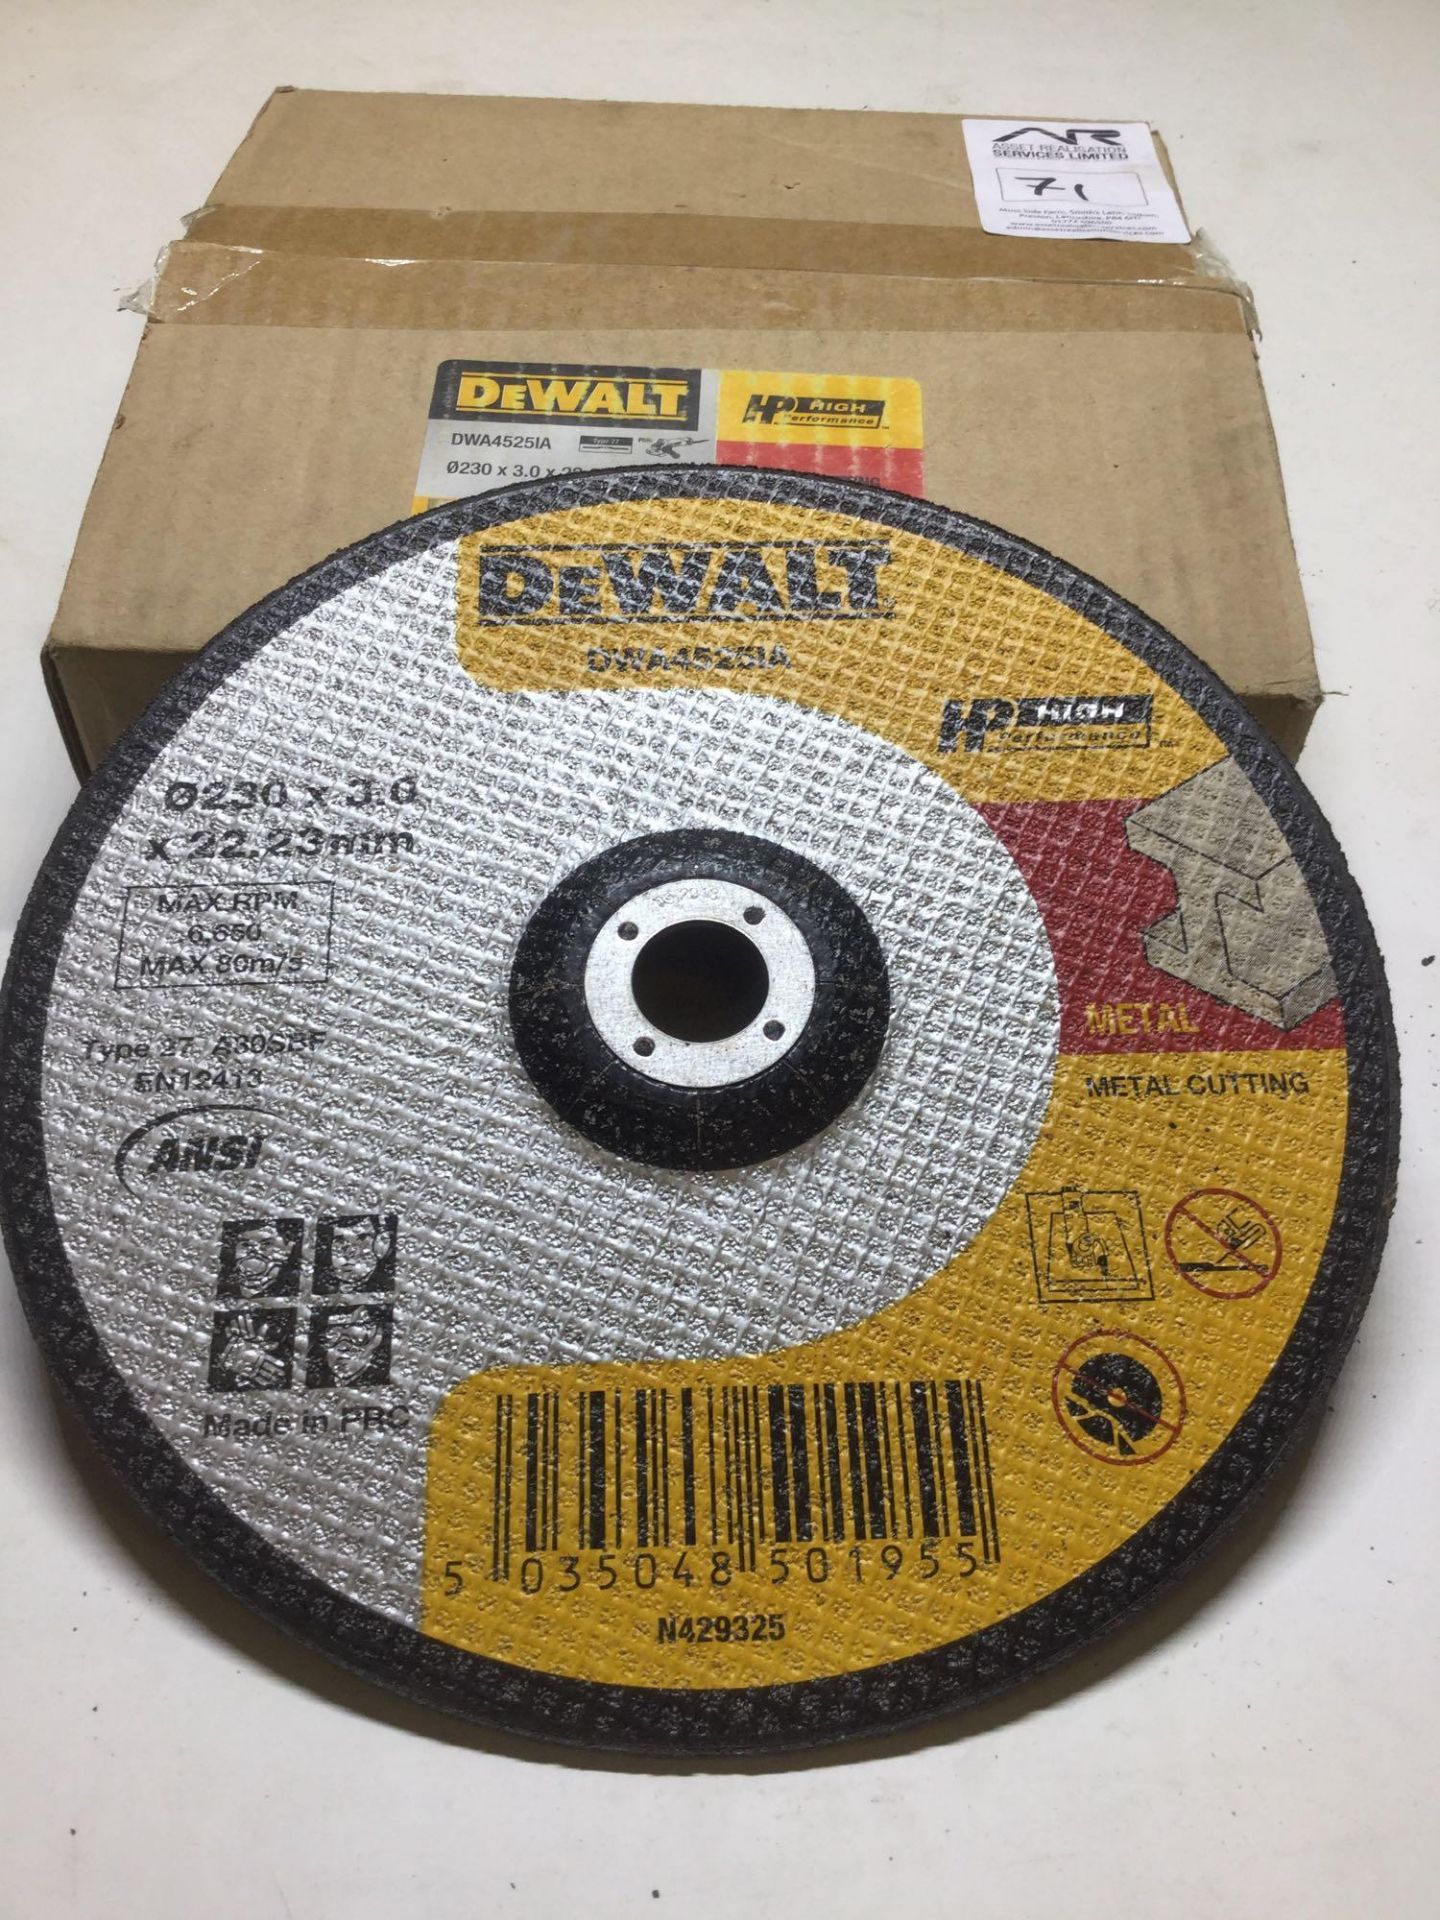 Dewalt 9â€ Metal Cutting Discs x10 per Box